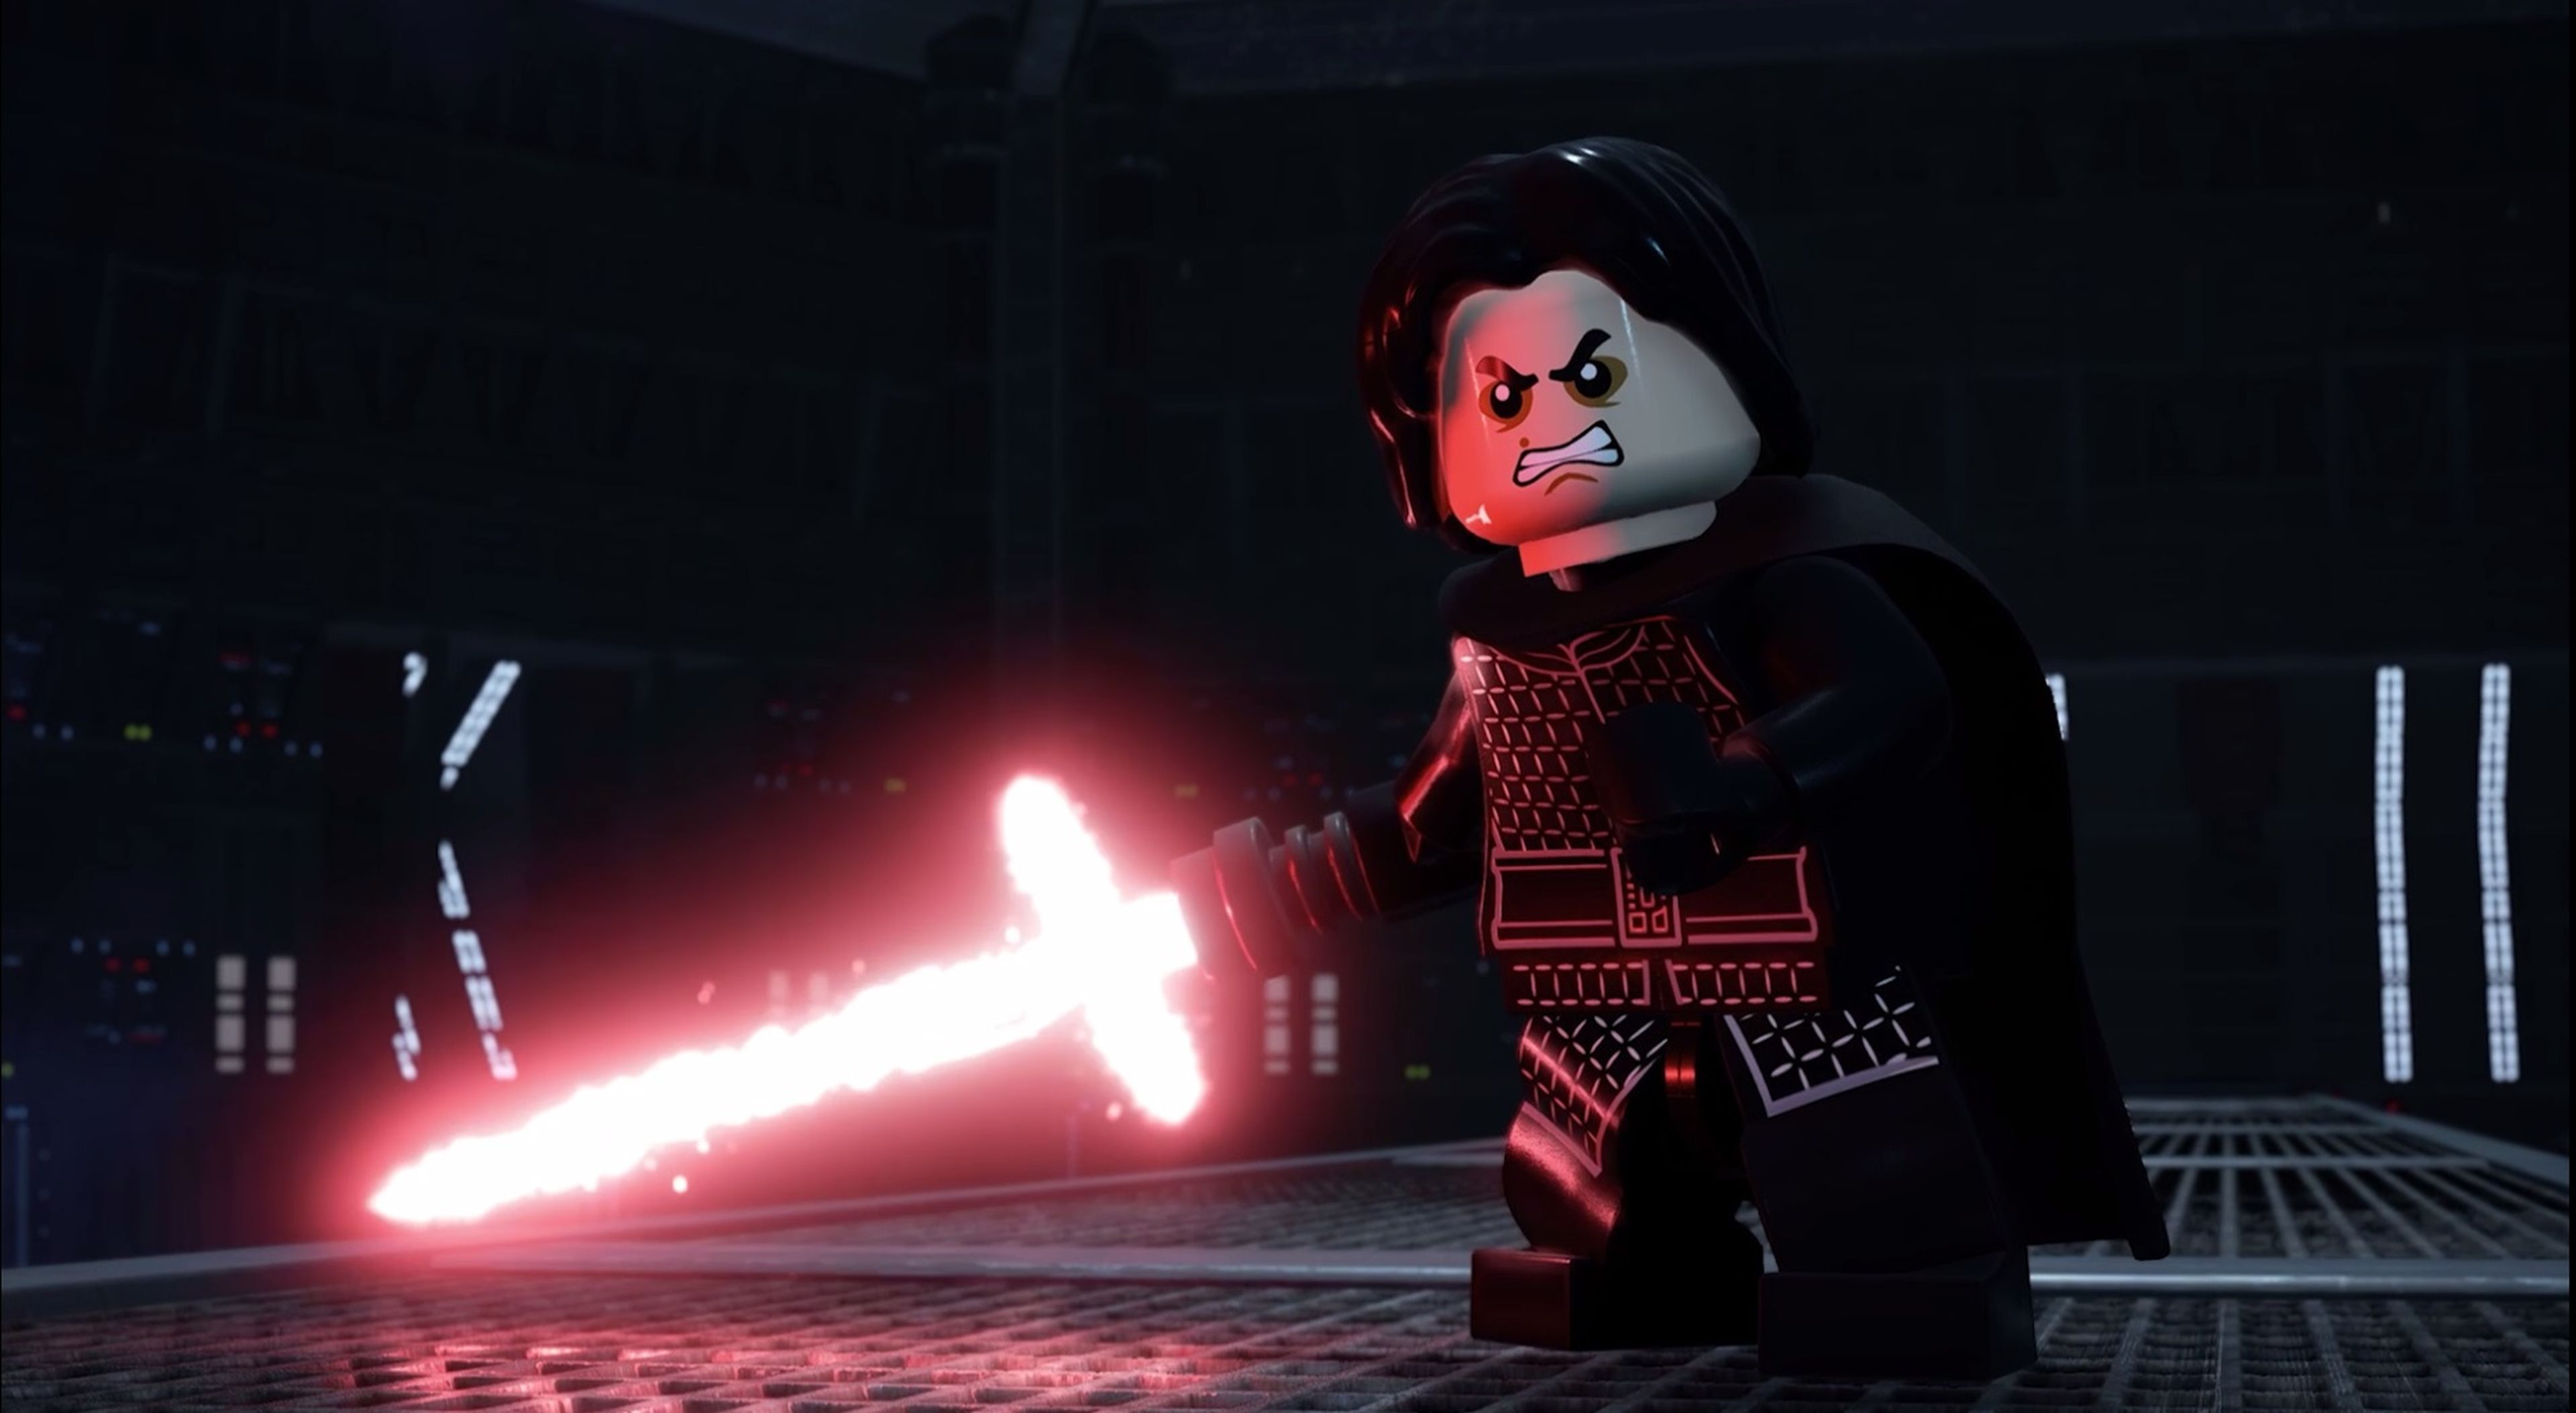 Requisitos mínimos y recomendados de LEGO Star Wars La saga